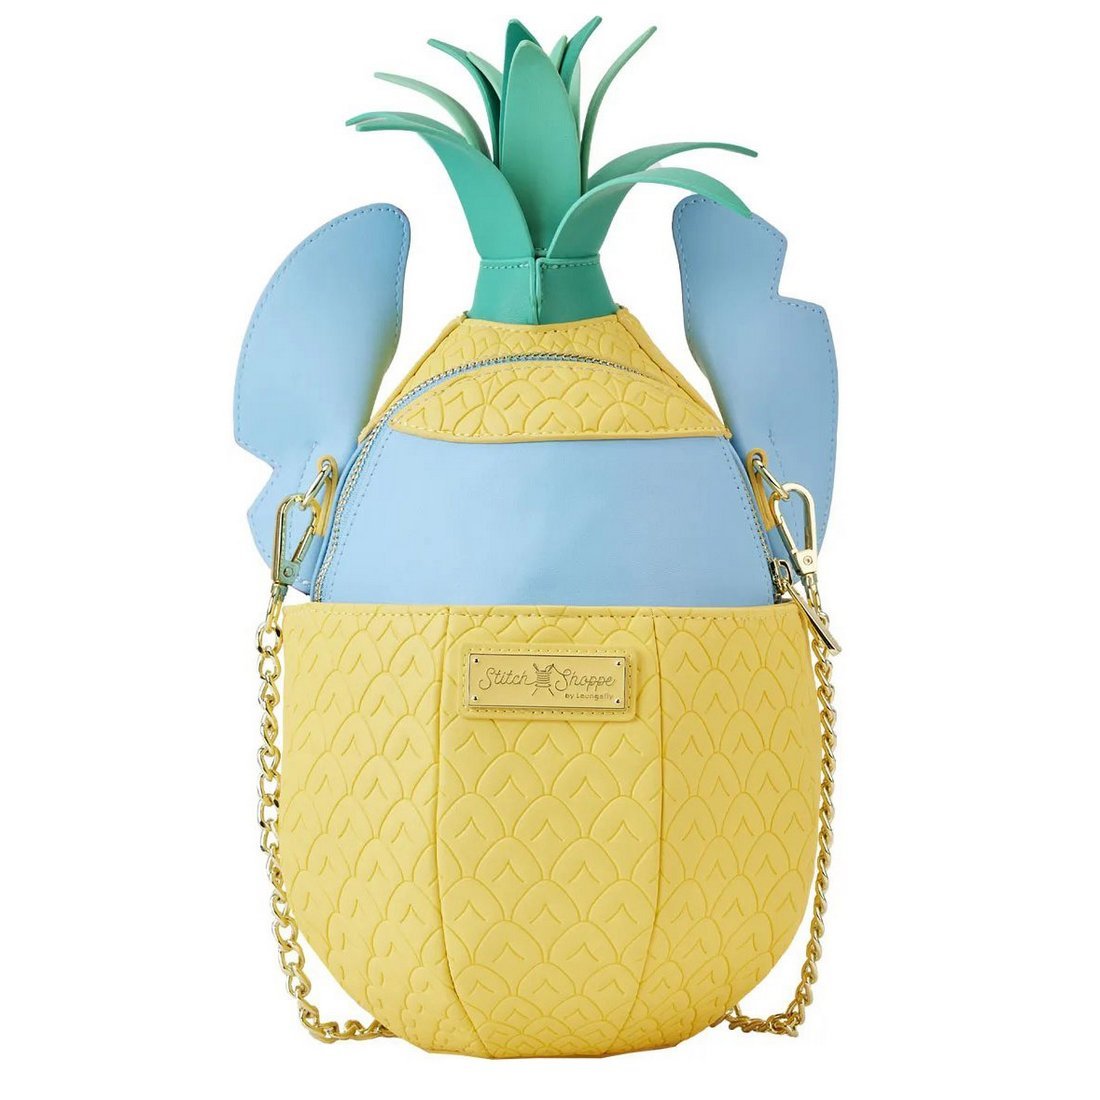 Stitch Shoppe Stitch in Pineapple